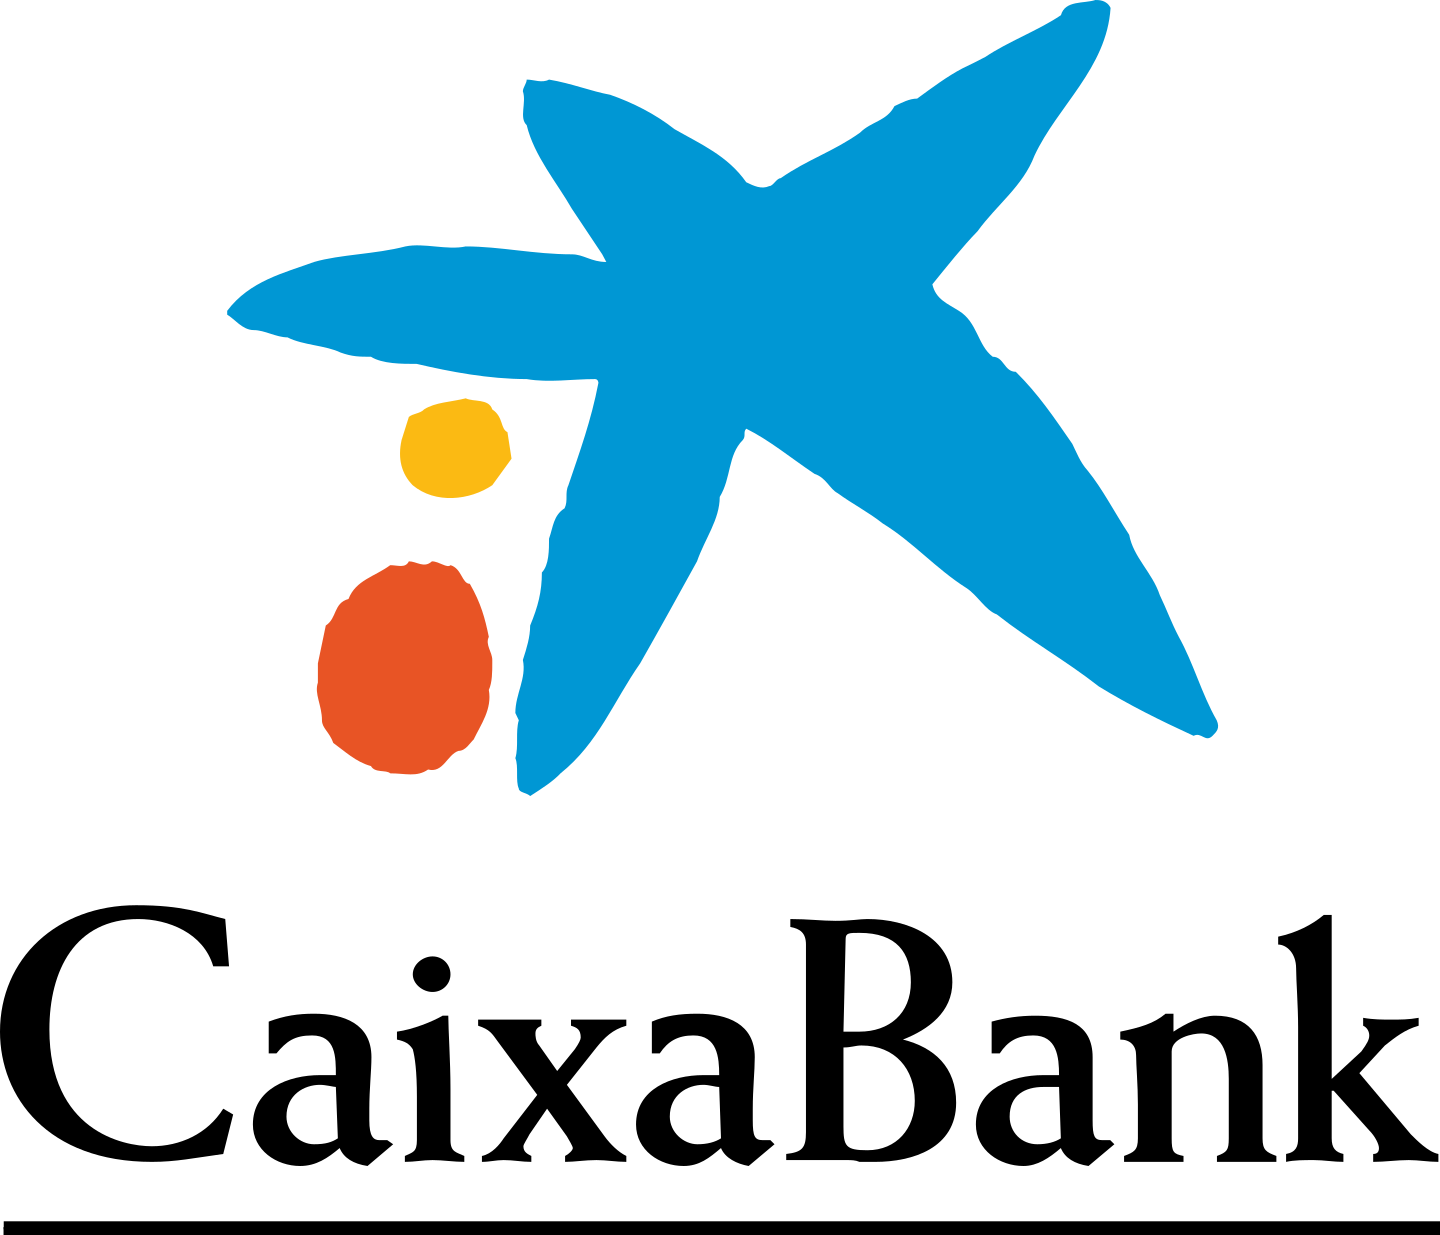 la caixa bank logo 3 - La Caixa Bank Logo